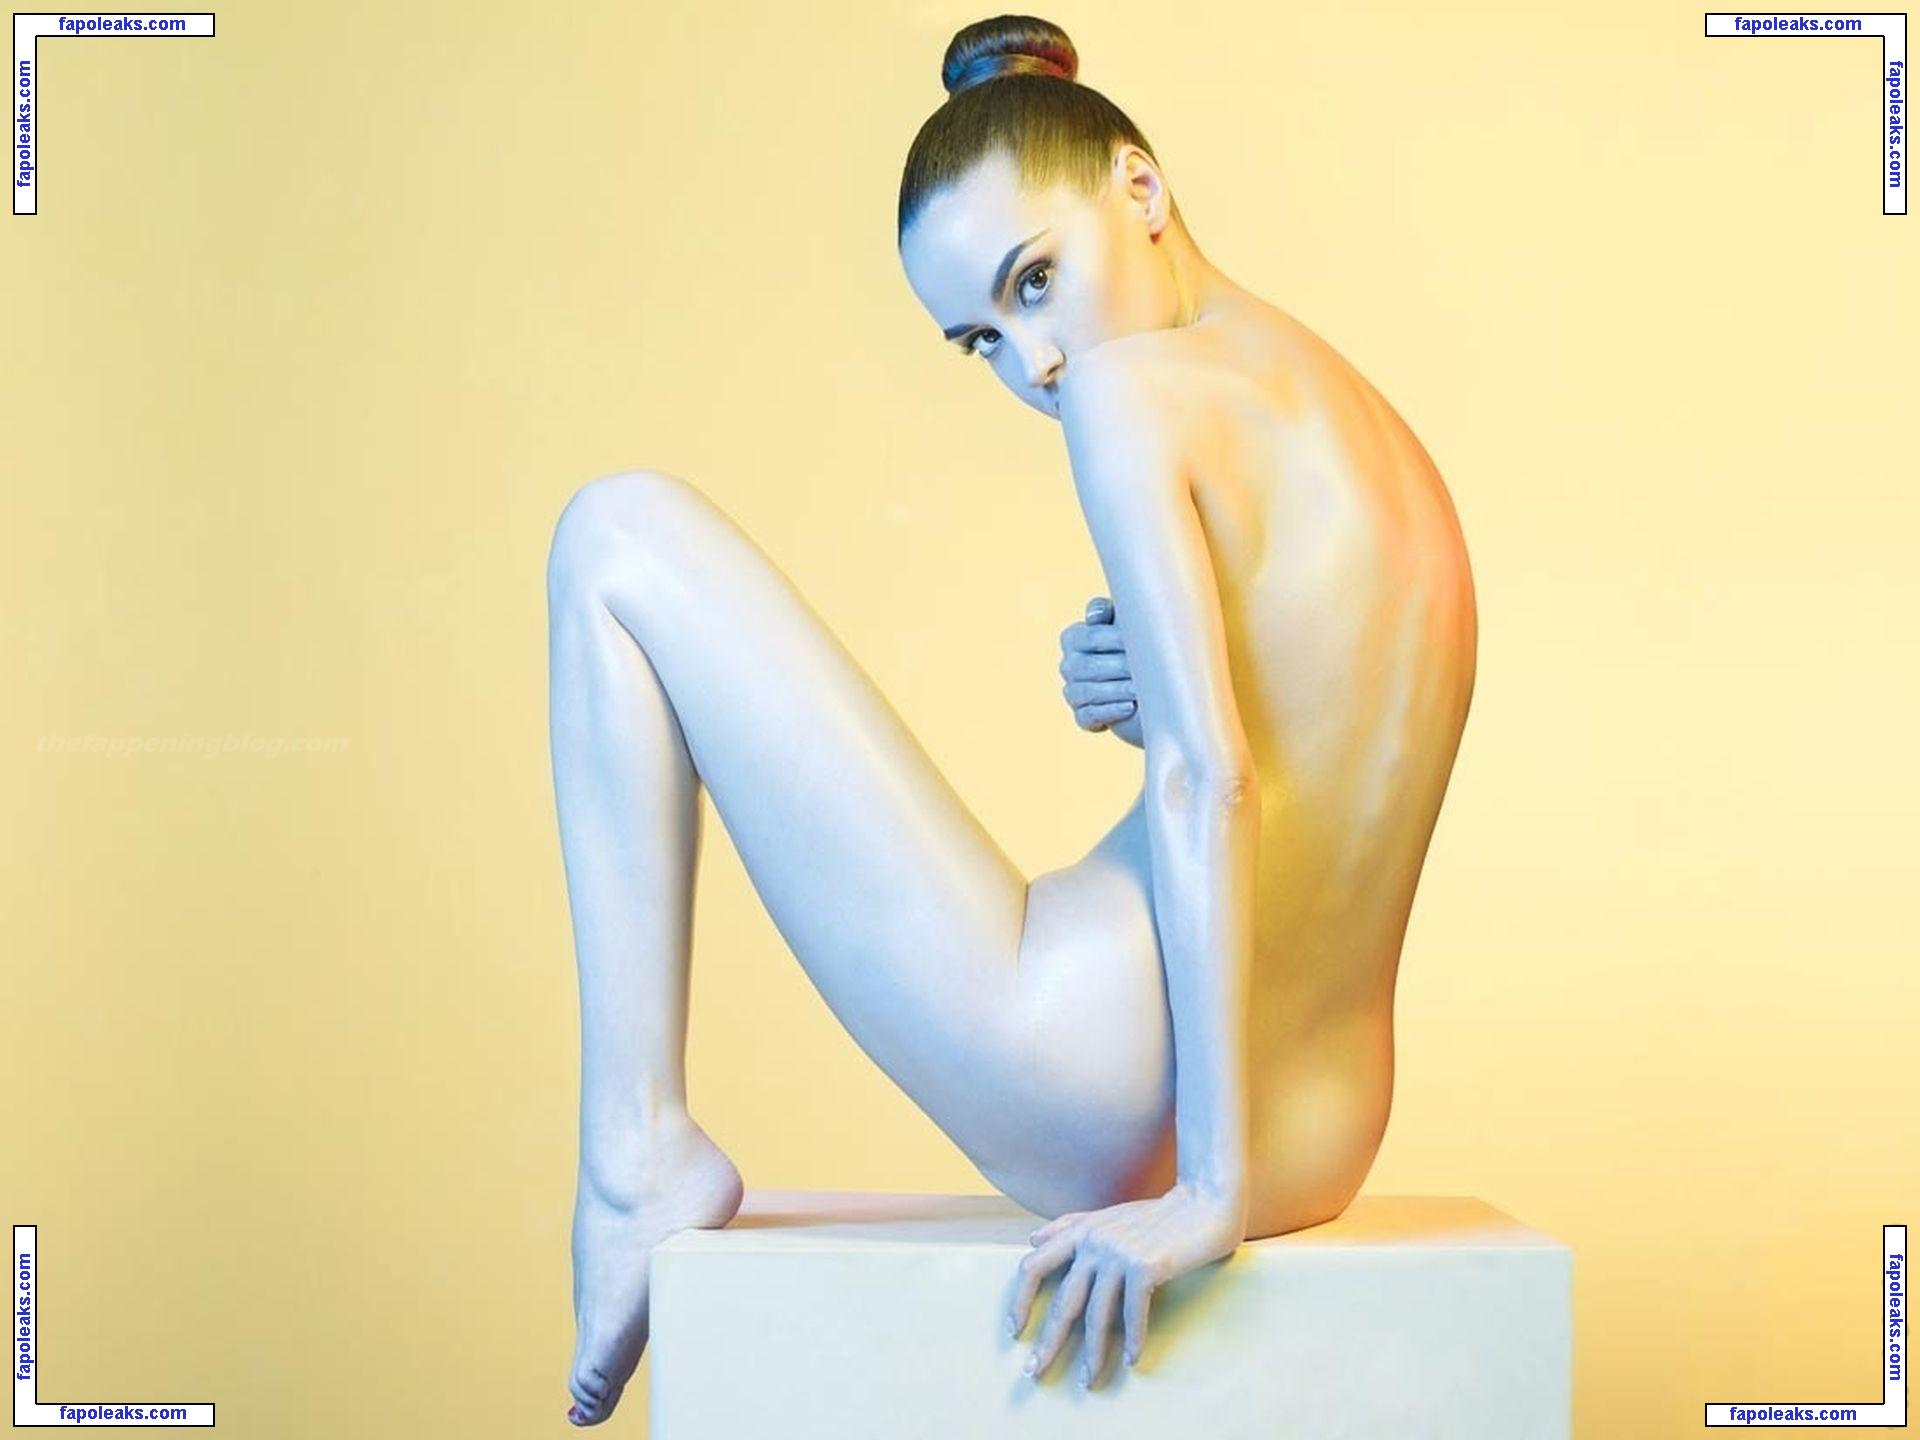 Nadezda Korobkova nude photo #0007 from OnlyFans